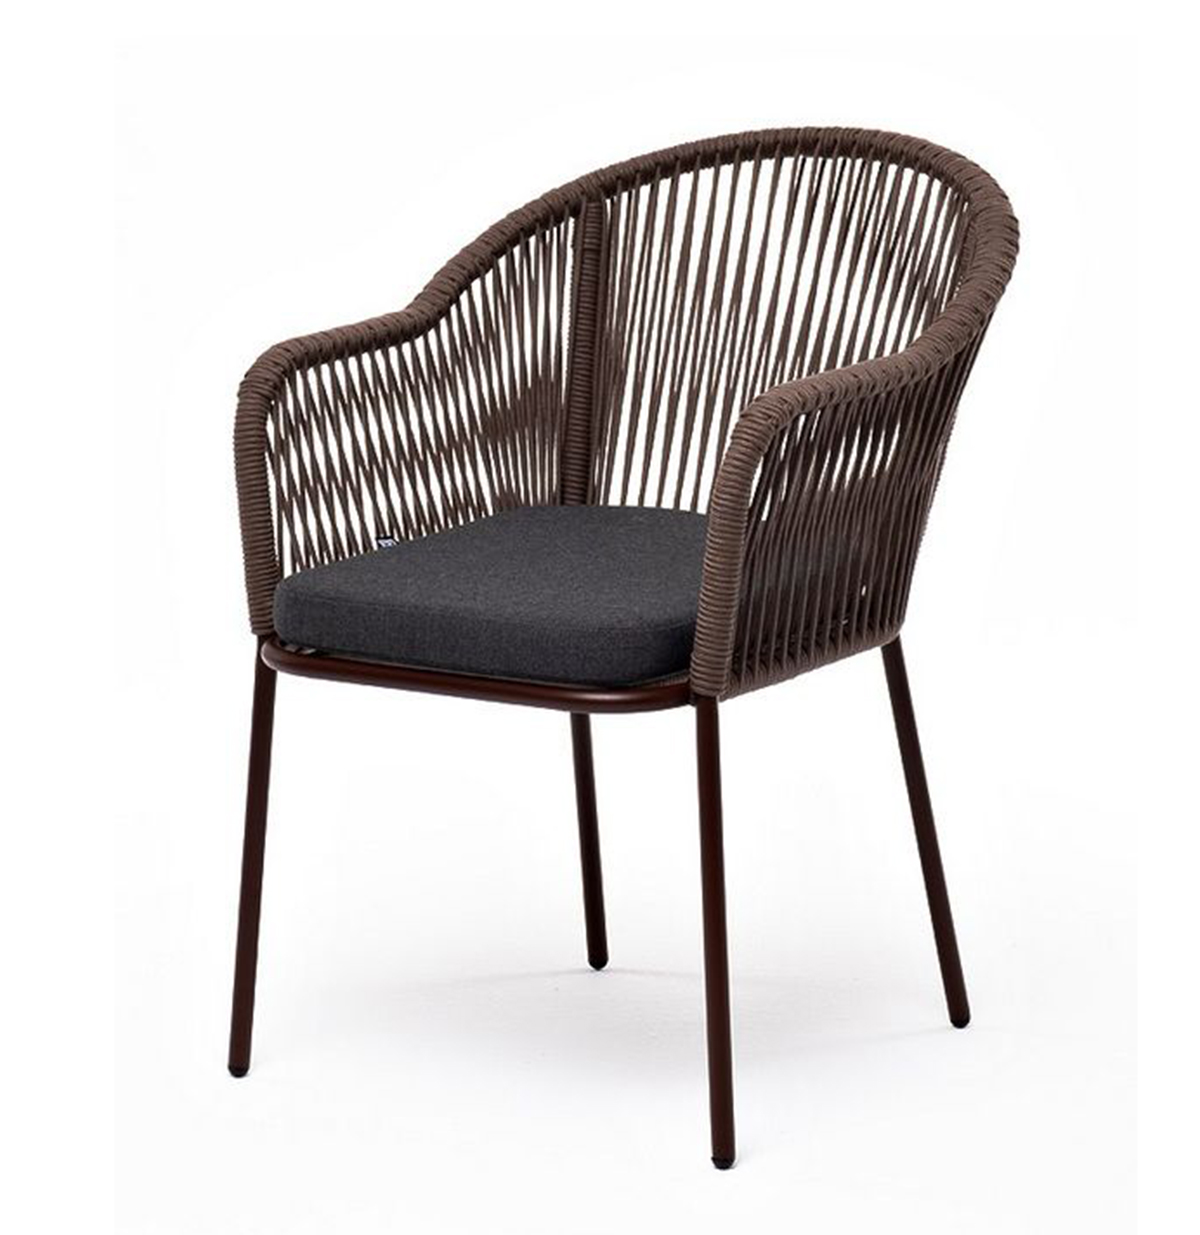 Плетеный стул из роупа Лион коричневый, ткань темно-серая плетеный стул лион из роупа темно серый